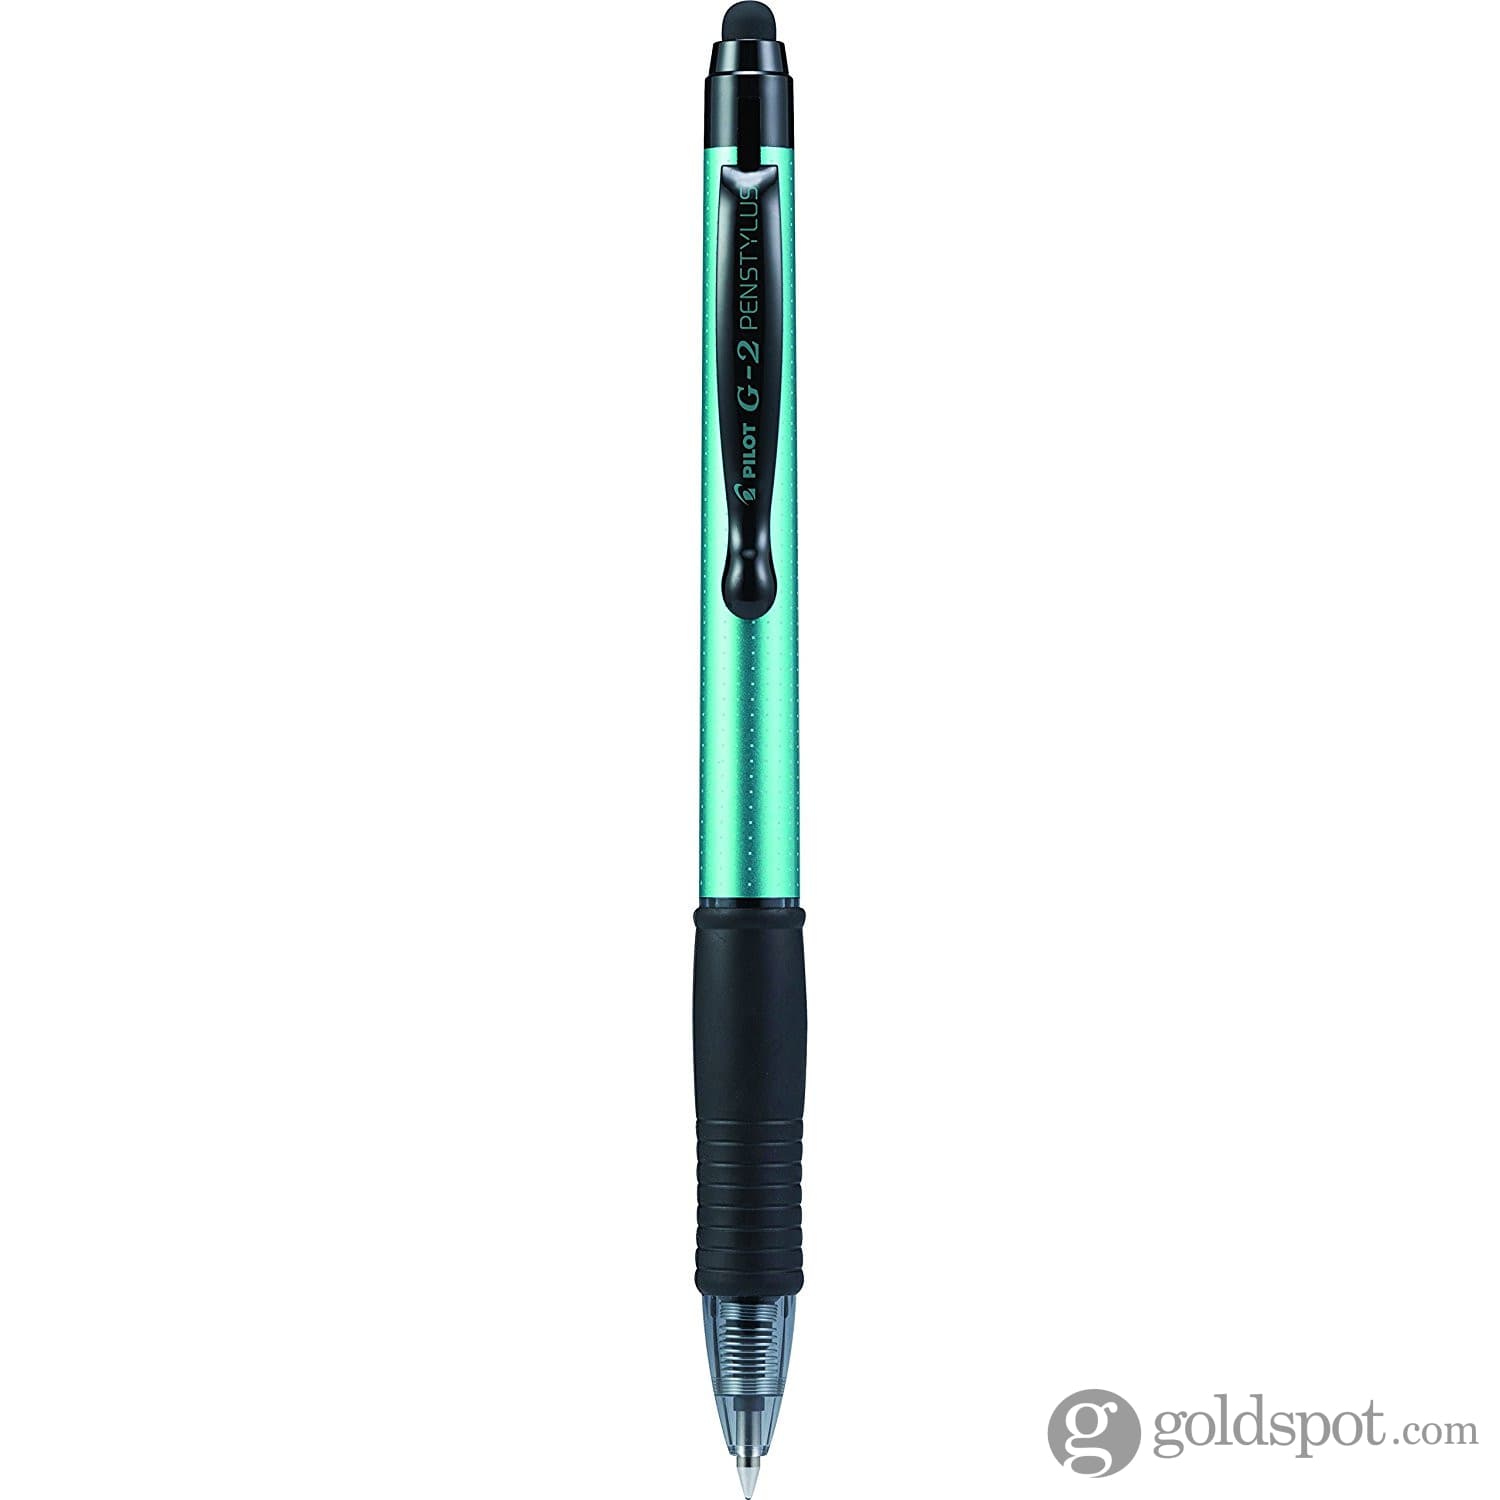 Pilot G2 Retractable Brilliant Metallic Gel Ink Pens in Assorted